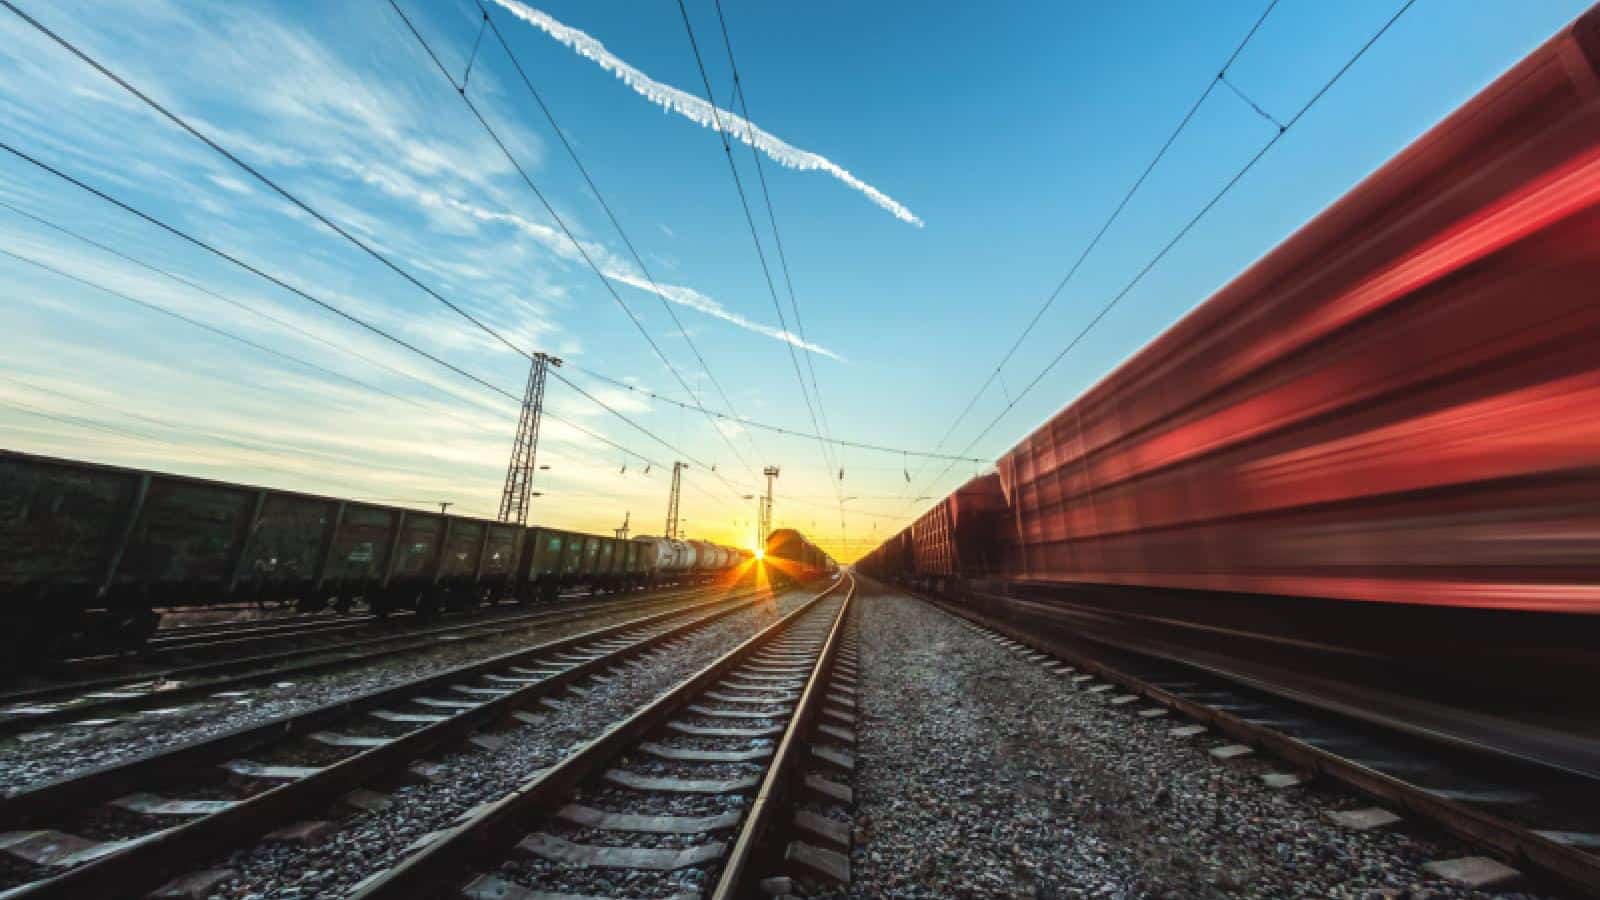 Technology providers partner to improve breakbulk rail tracking